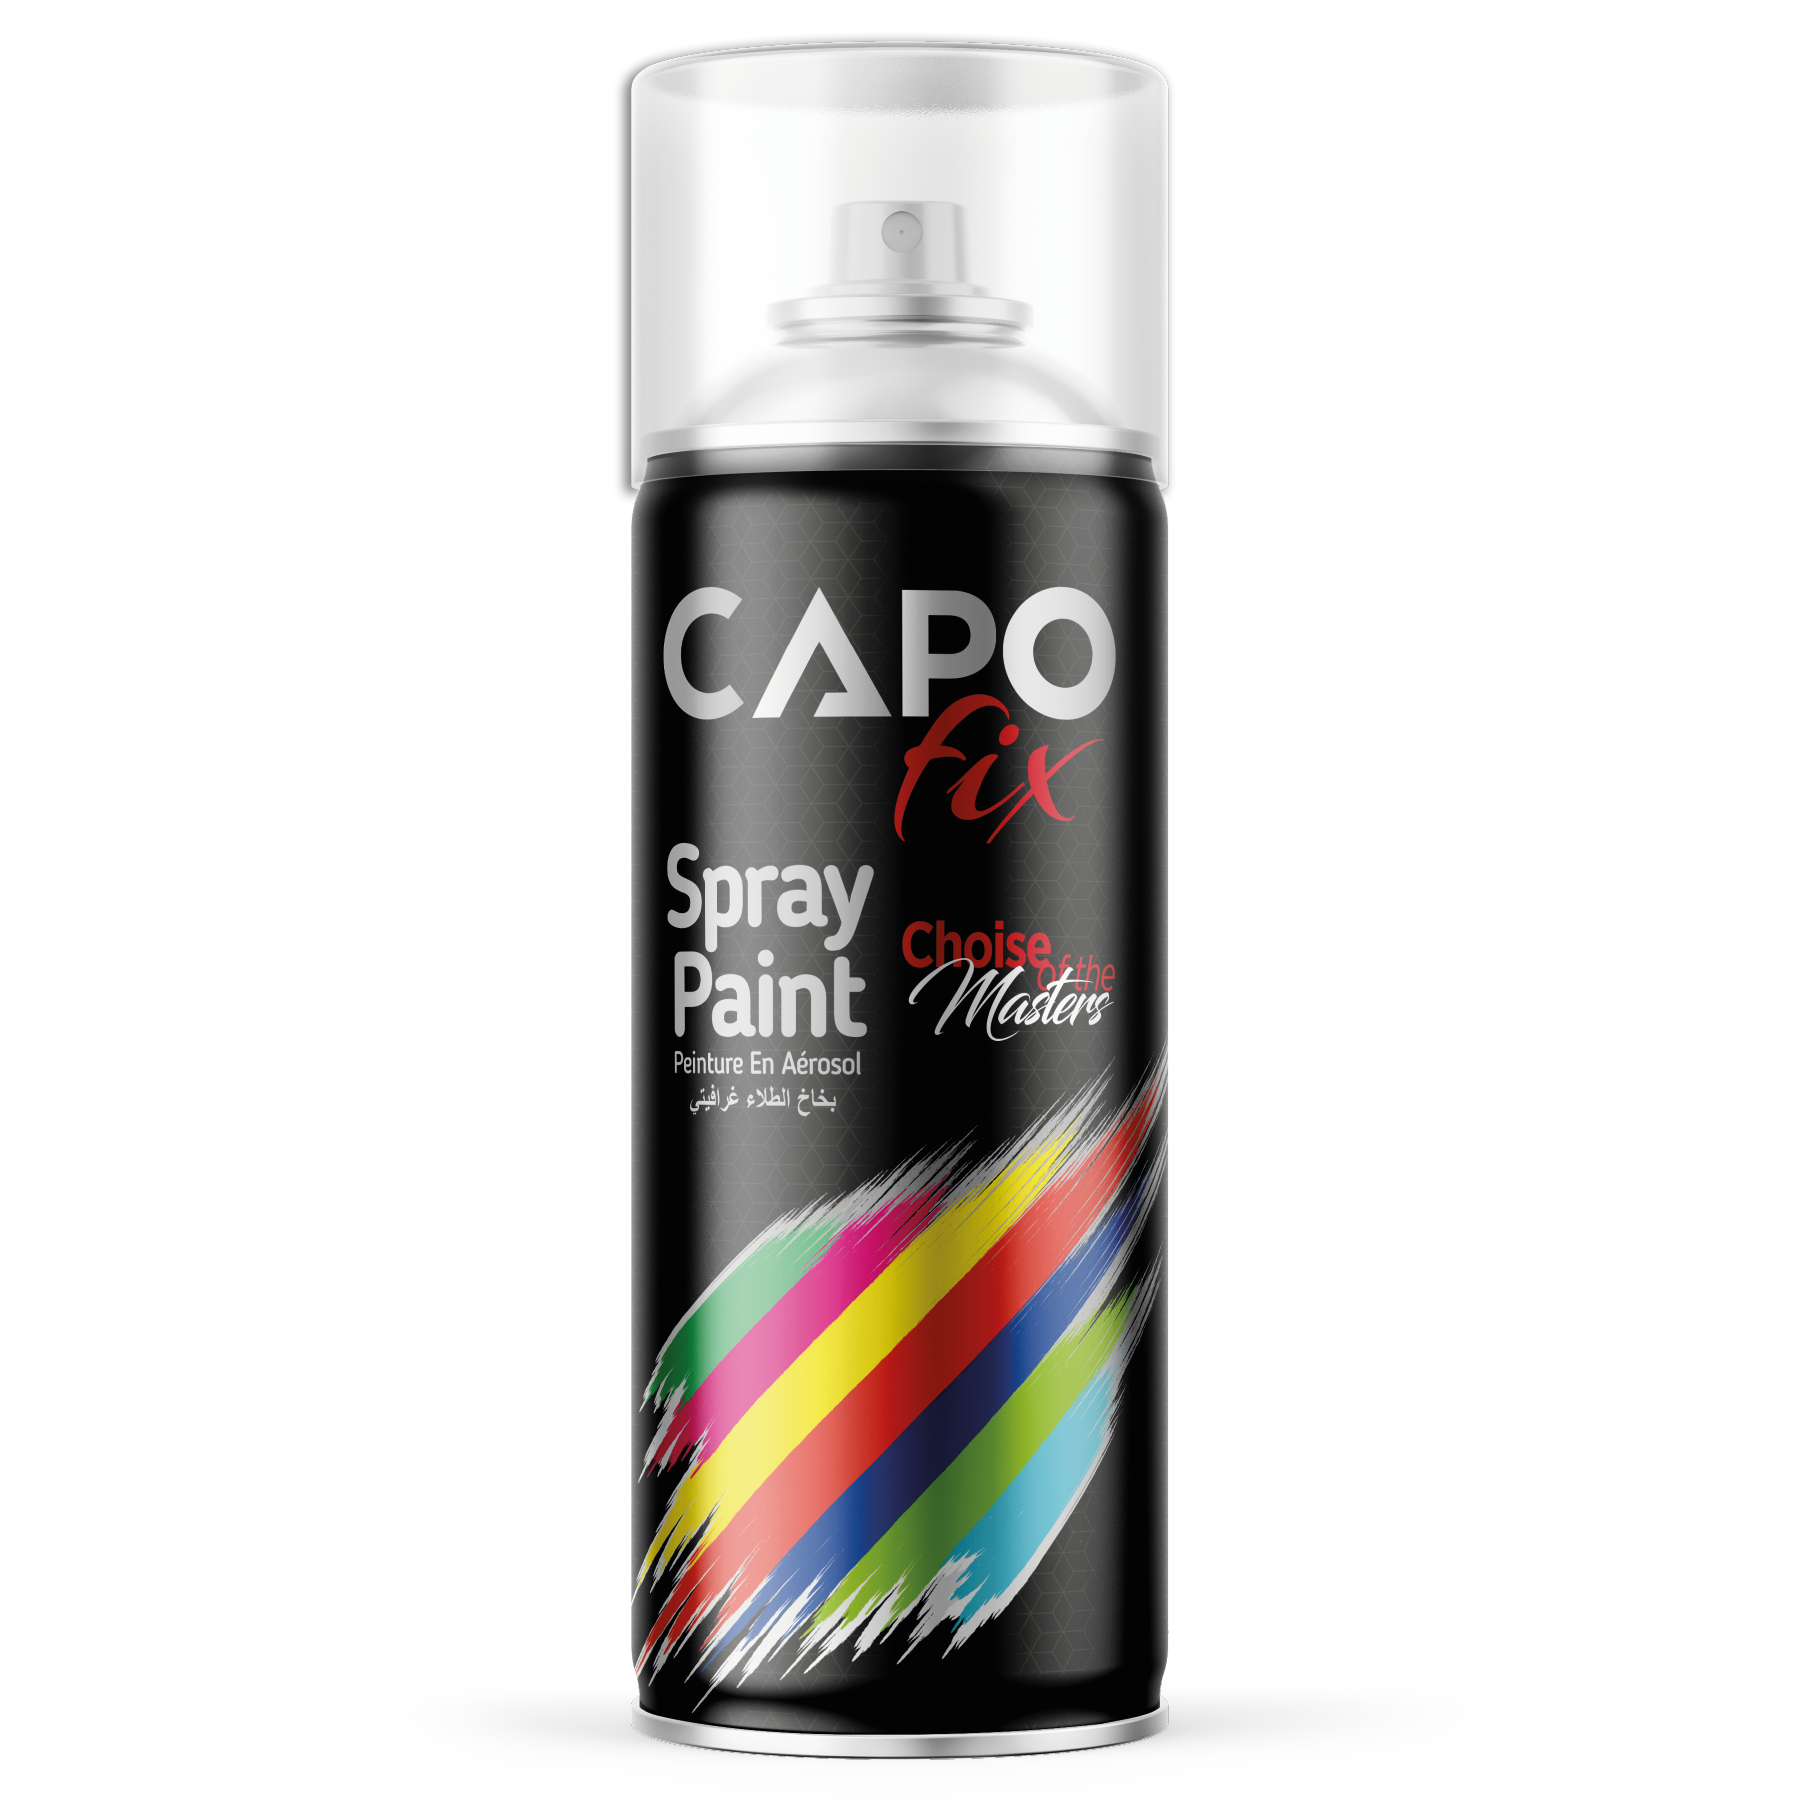 .CAPO fix Spray Paint.